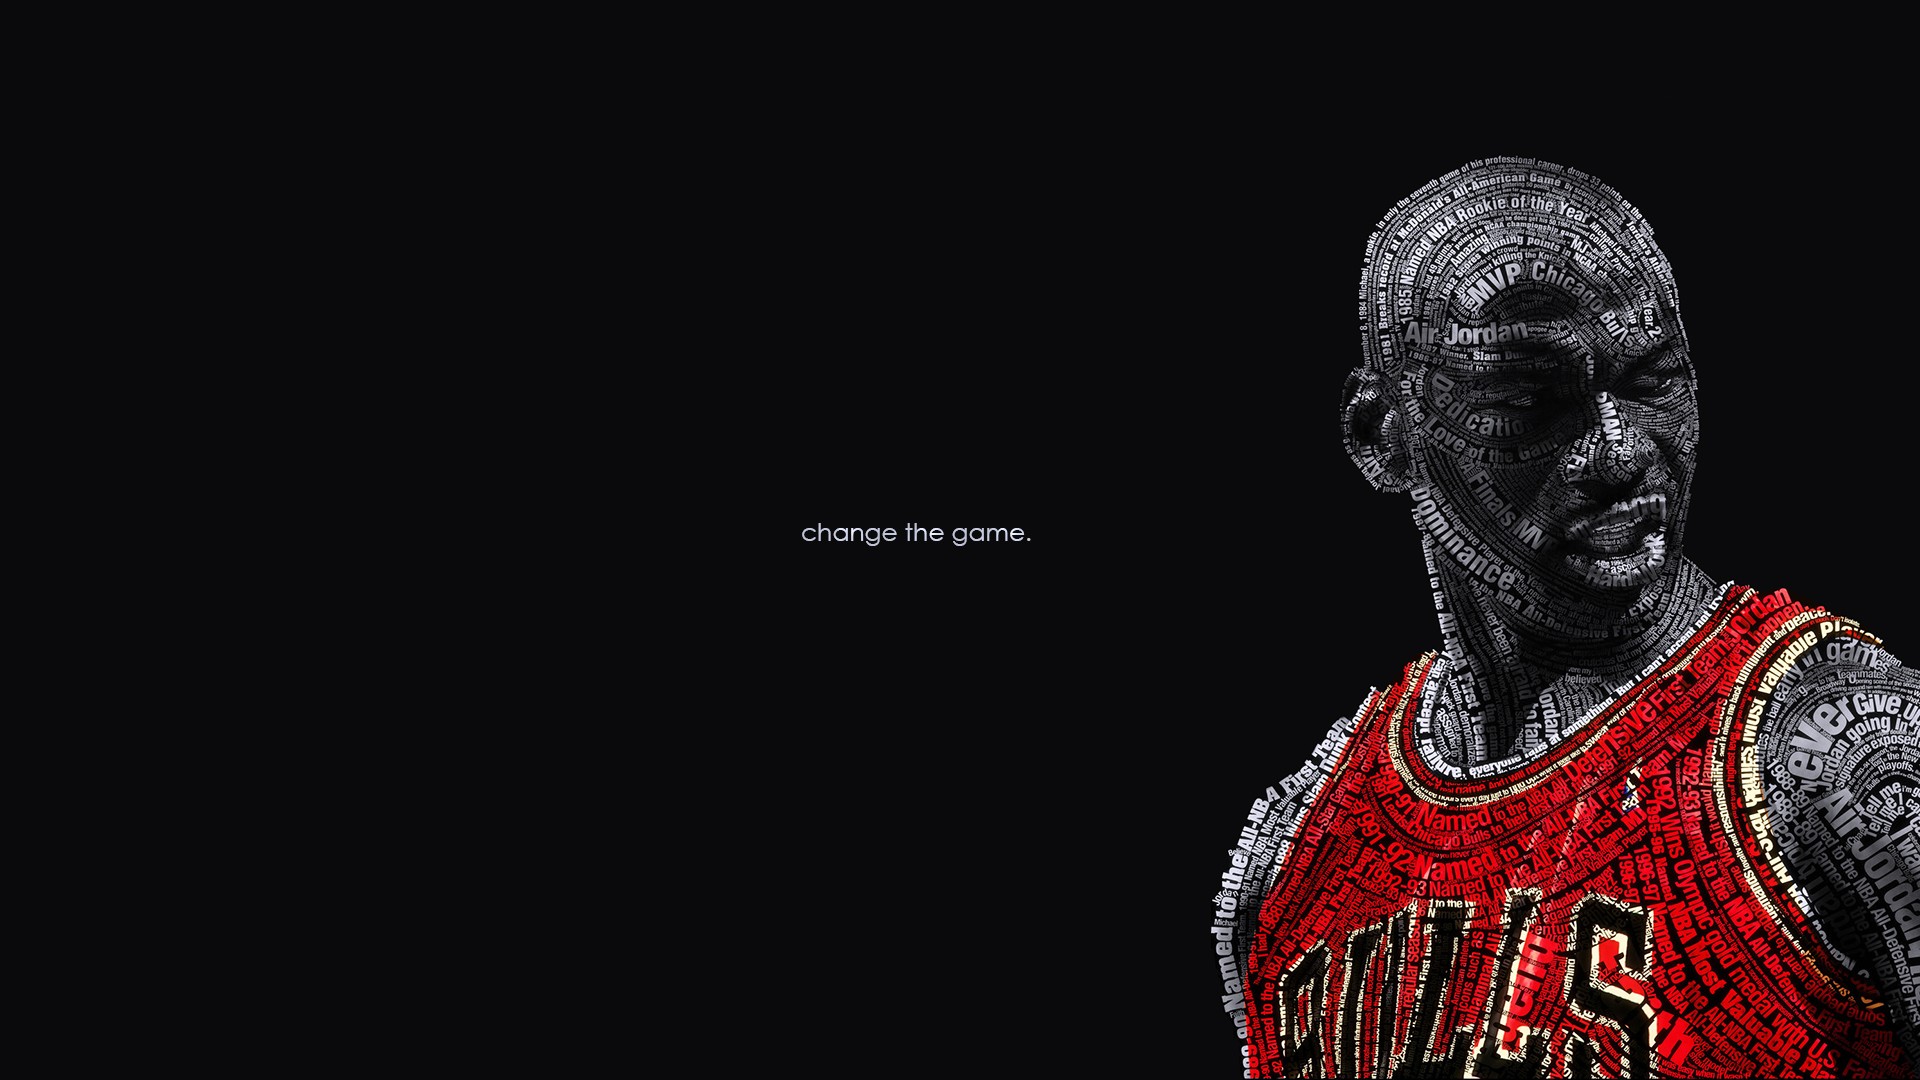 Basketball Puter Wallpaper Desktop Background Id